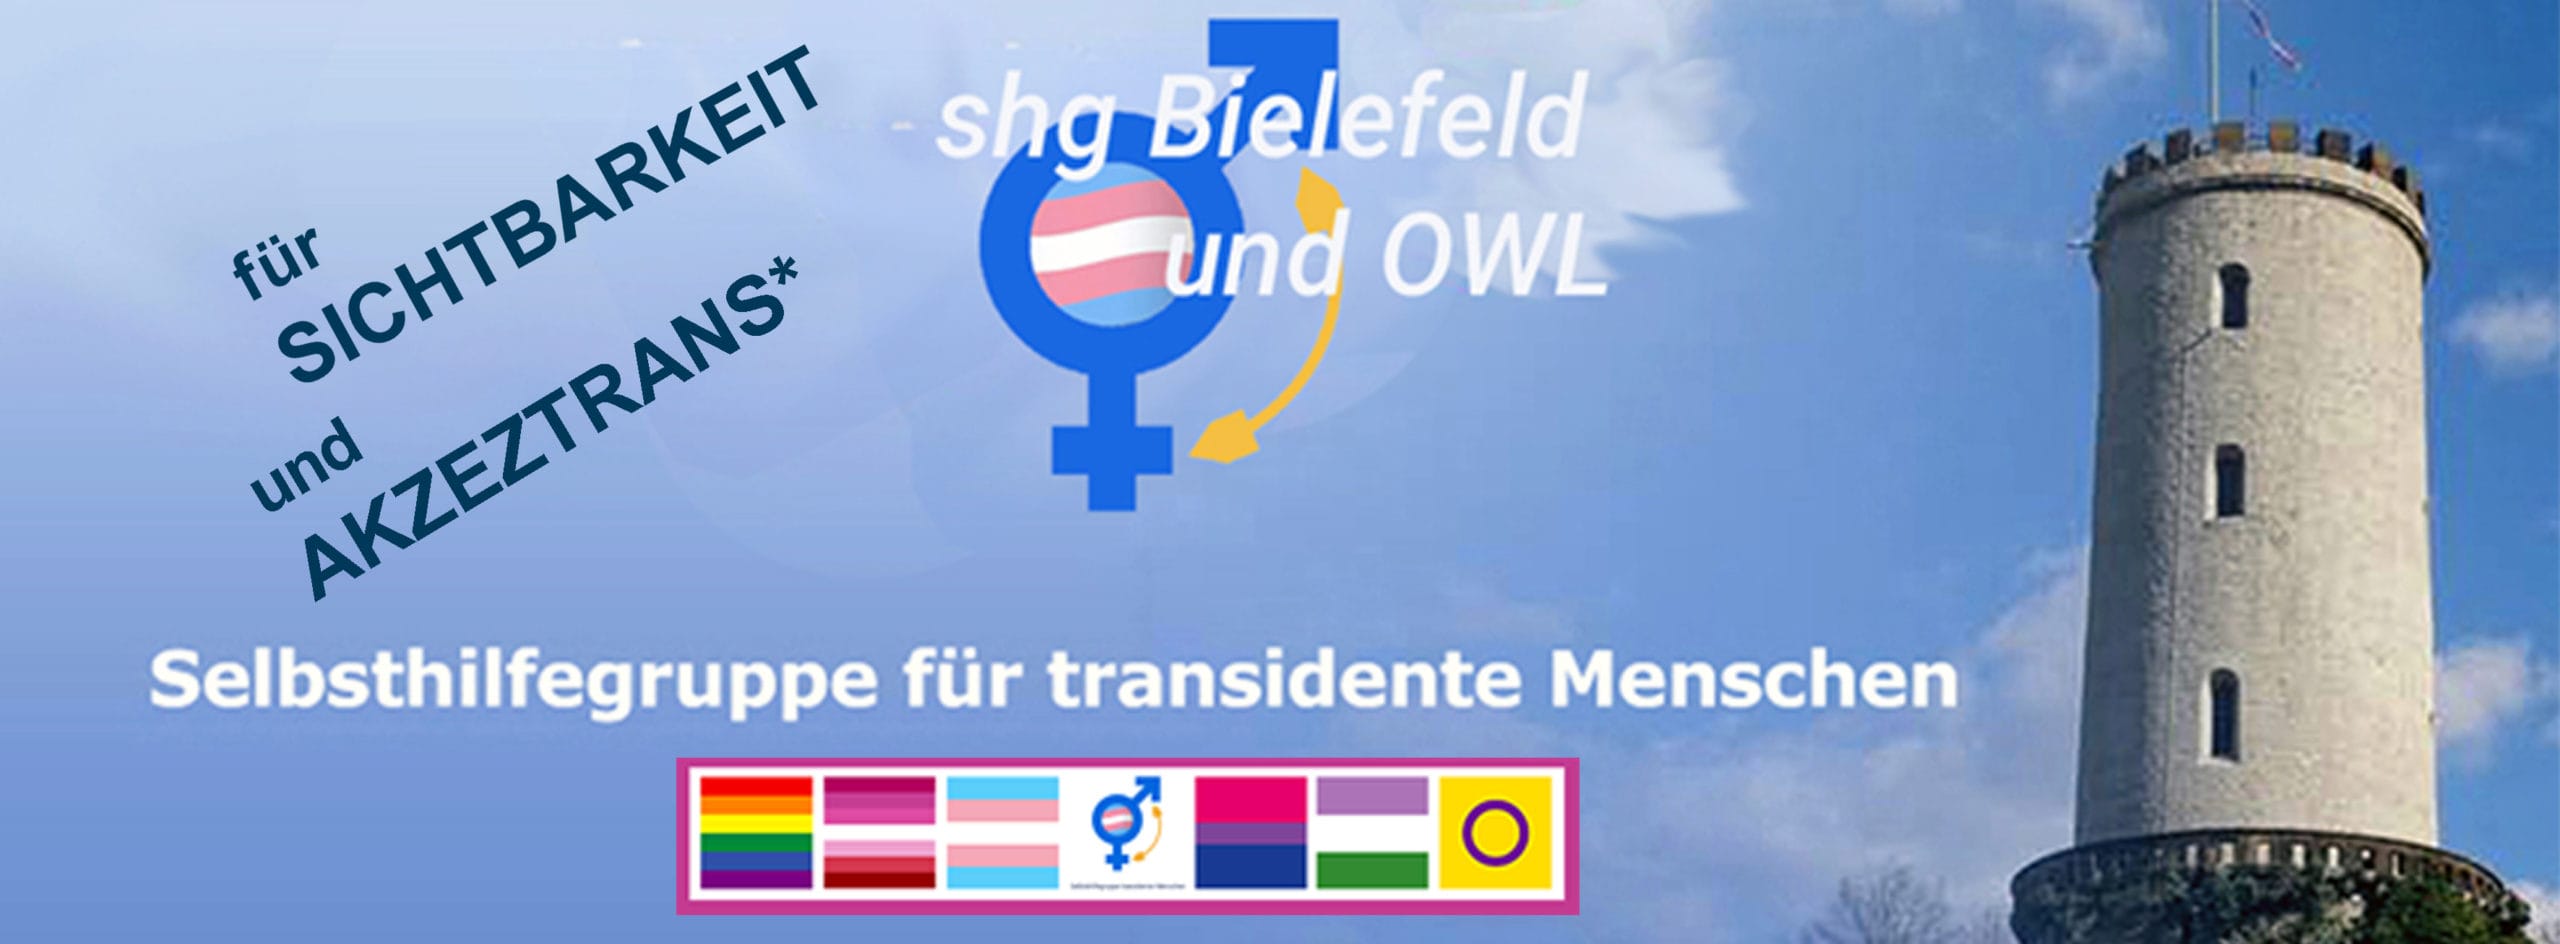 Logo der SHG Transident Bielefeld und OWL